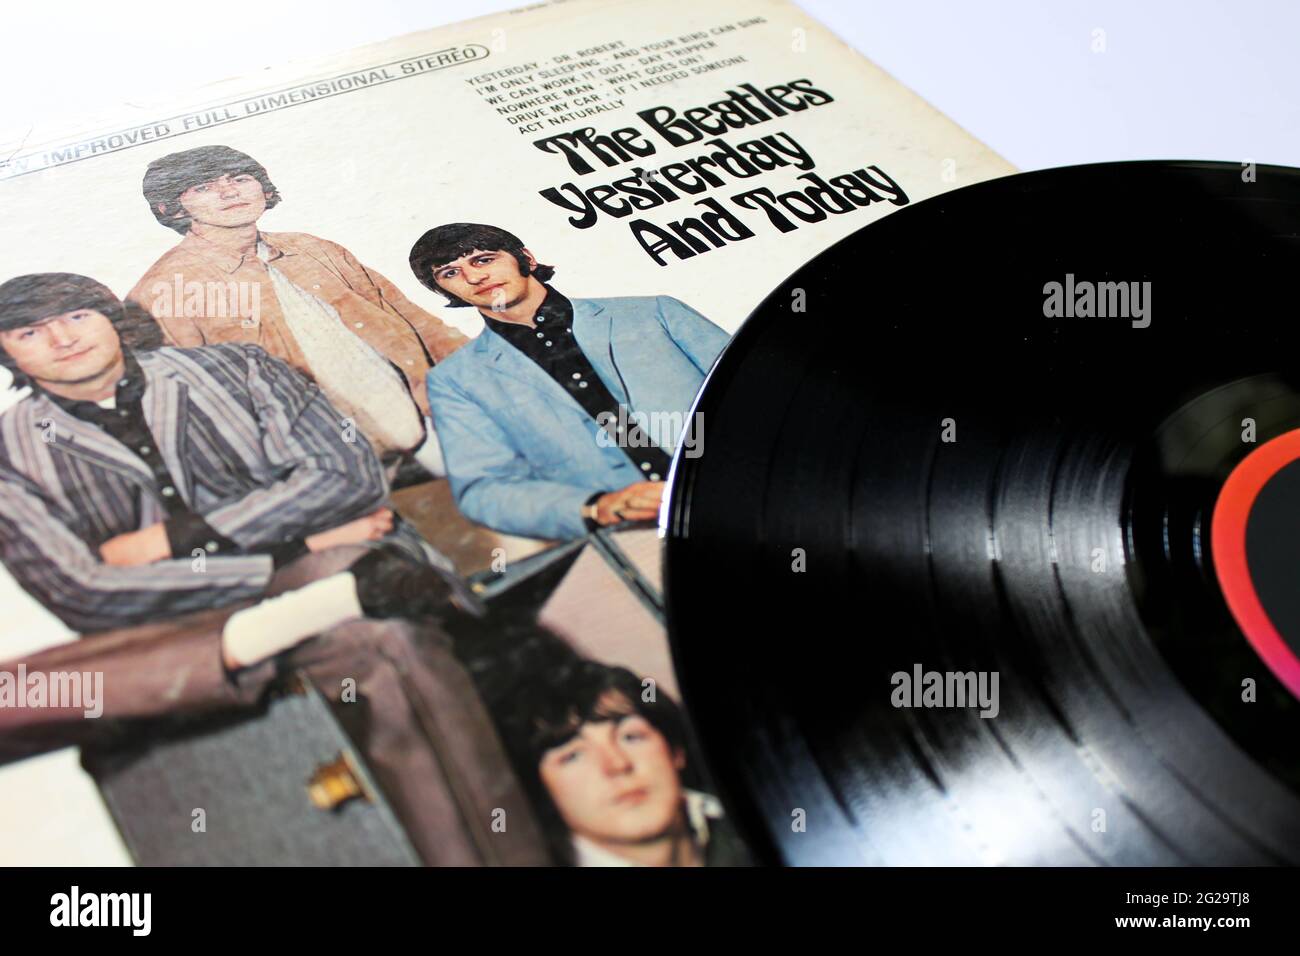 Englische Rockband The Beatles Musikalbum auf Vinyl-Schallplatte. Titel: Gestern und heute Albumcover Stockfoto